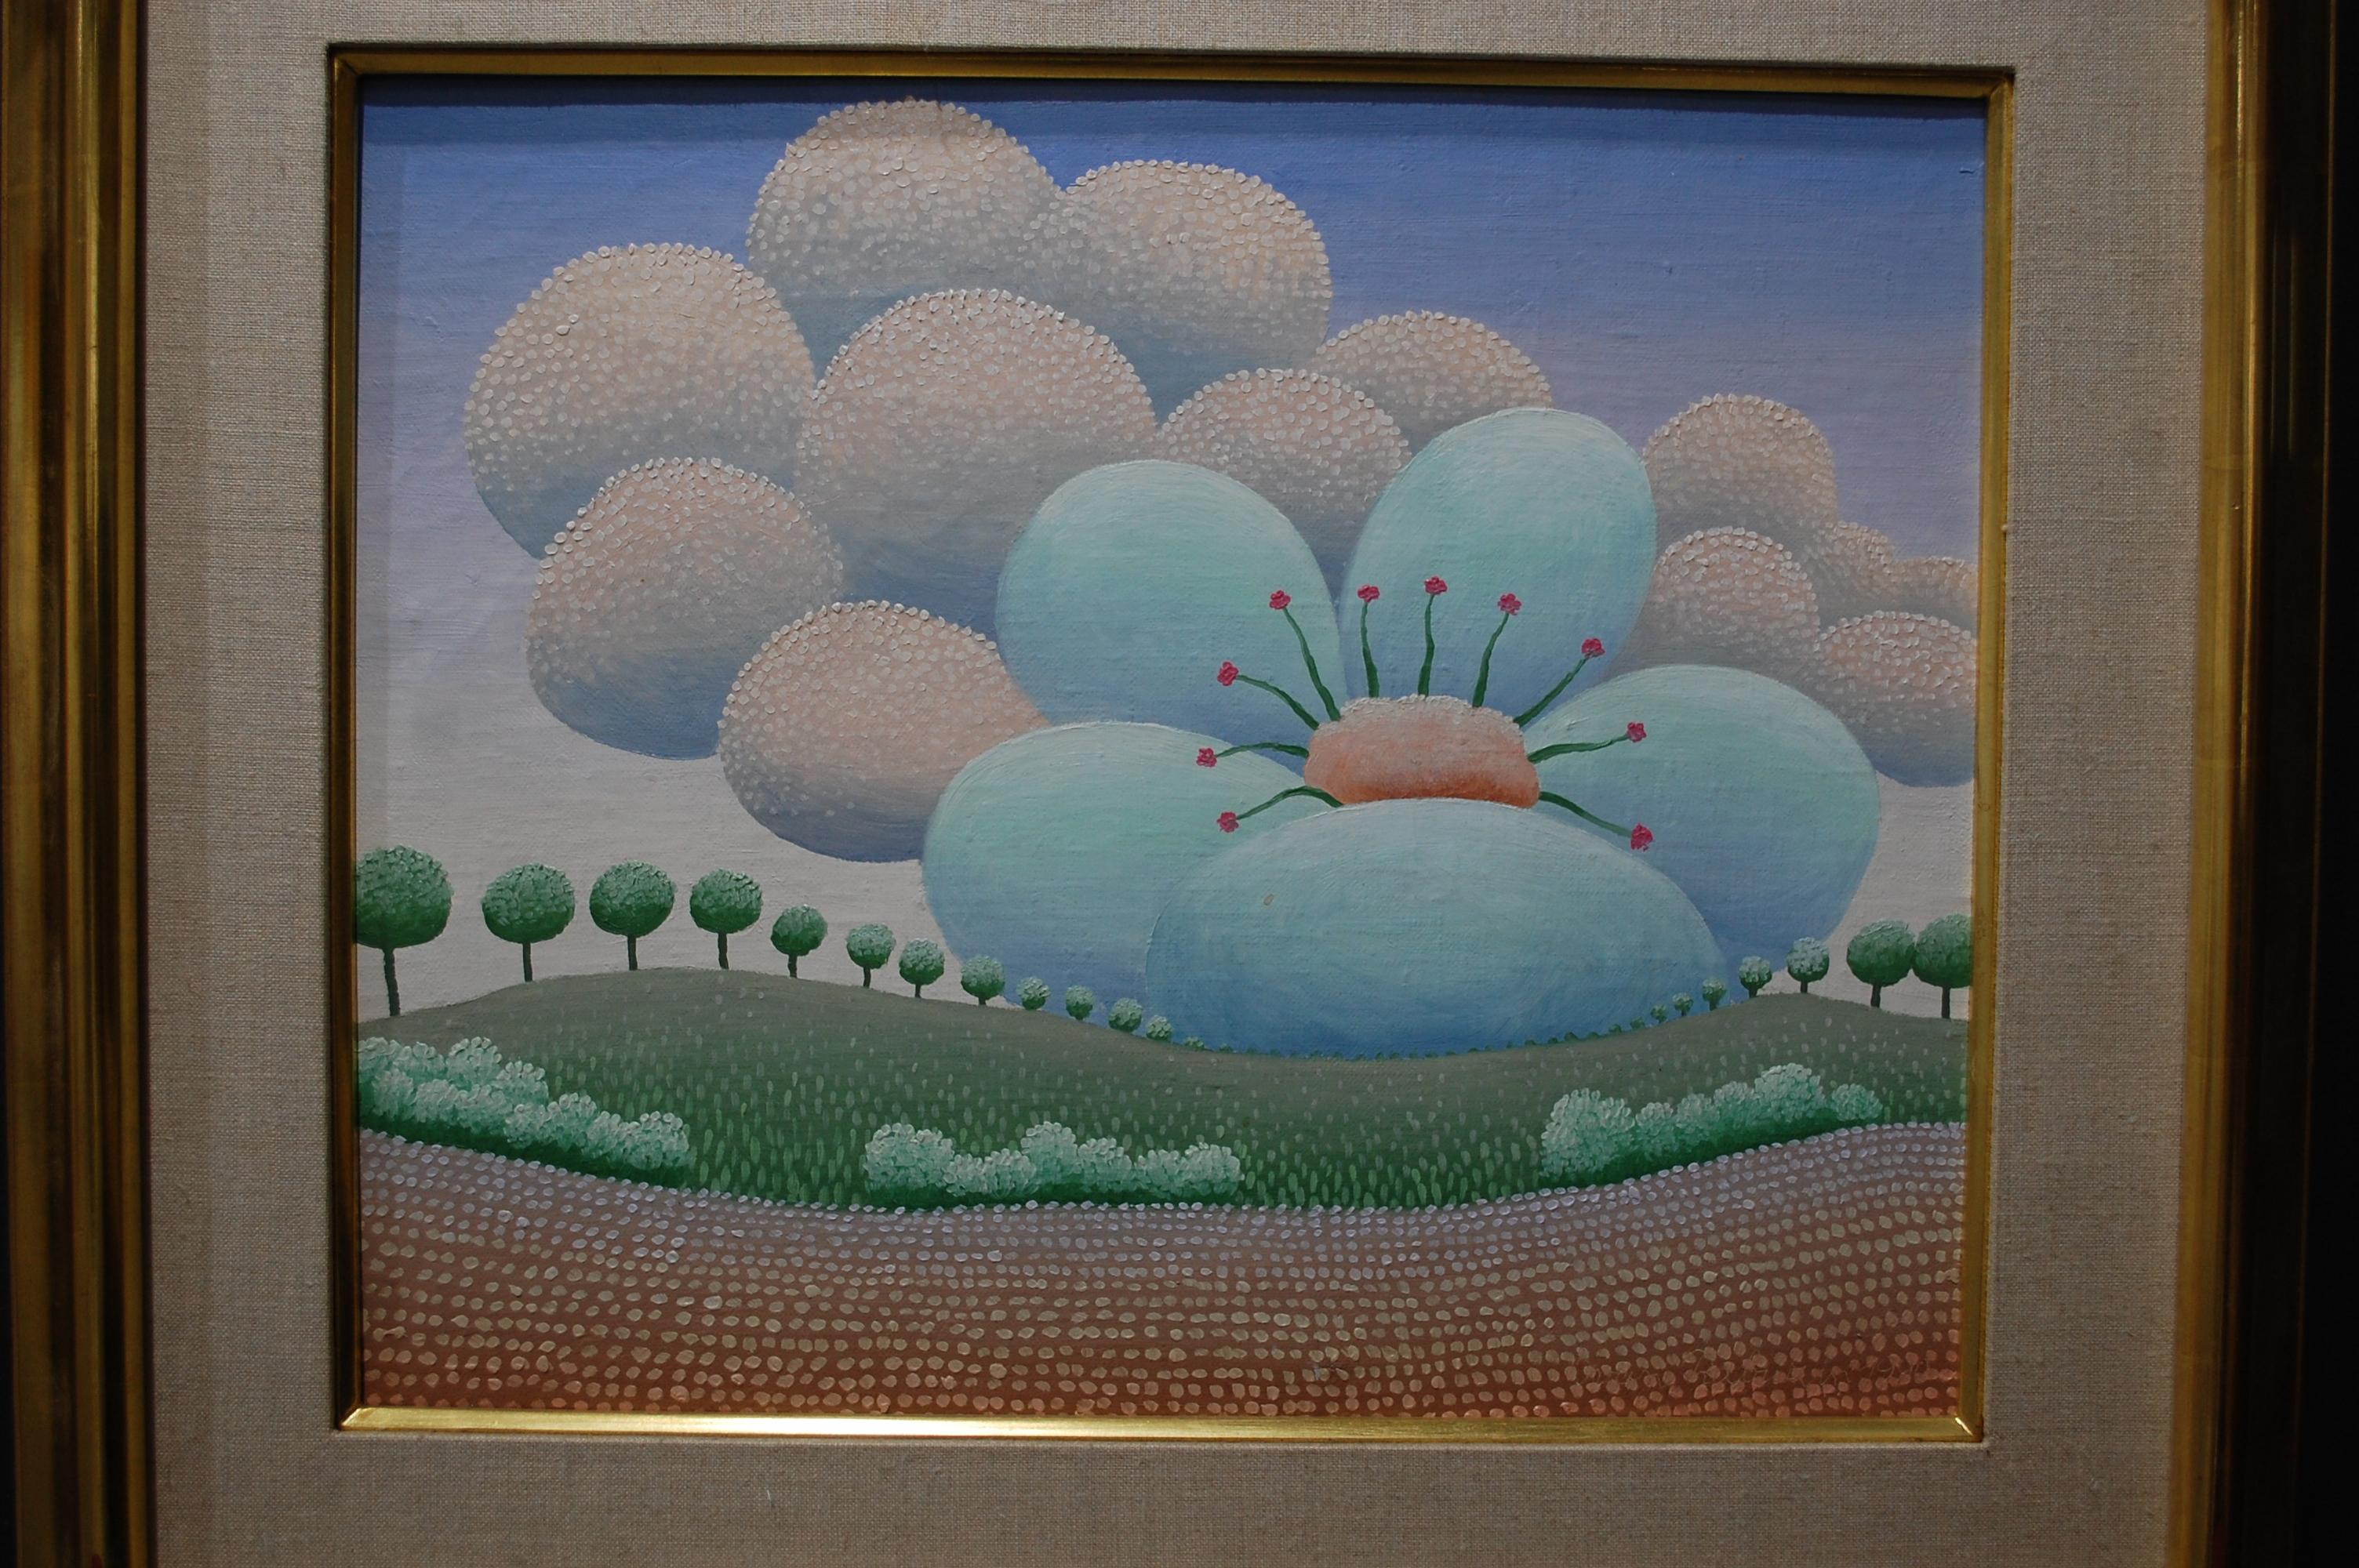 Grande fleur de printemps - Peinture de paysage surréaliste
1990
L'artiste a signé en bas à droite, huile sur toile 15 